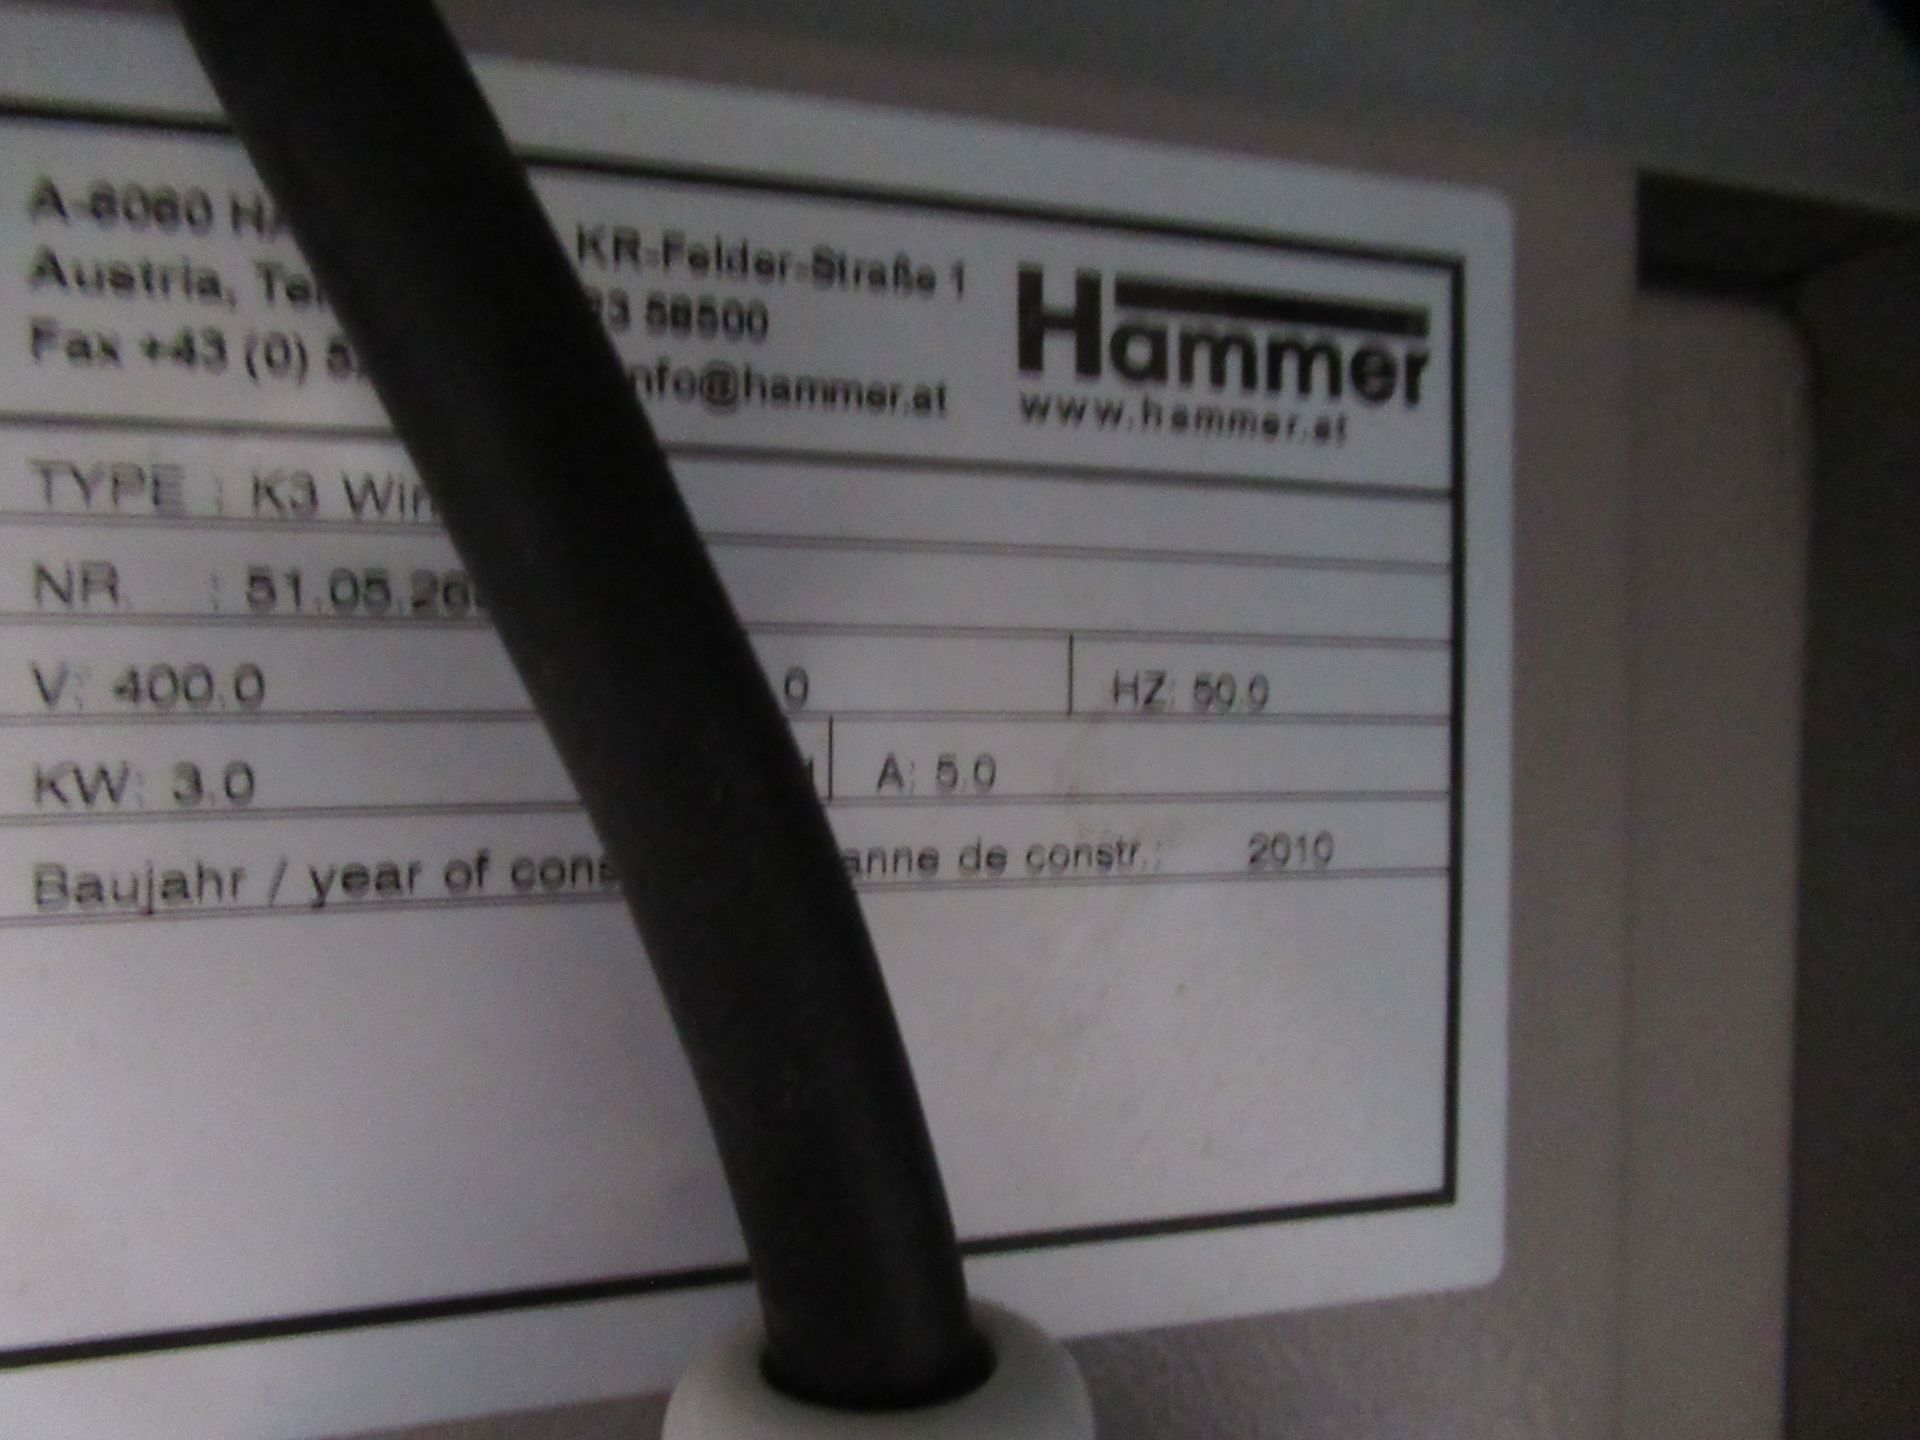 Felder 'Hammer' K3 Winner Tablesaw - 3ph - Image 8 of 8